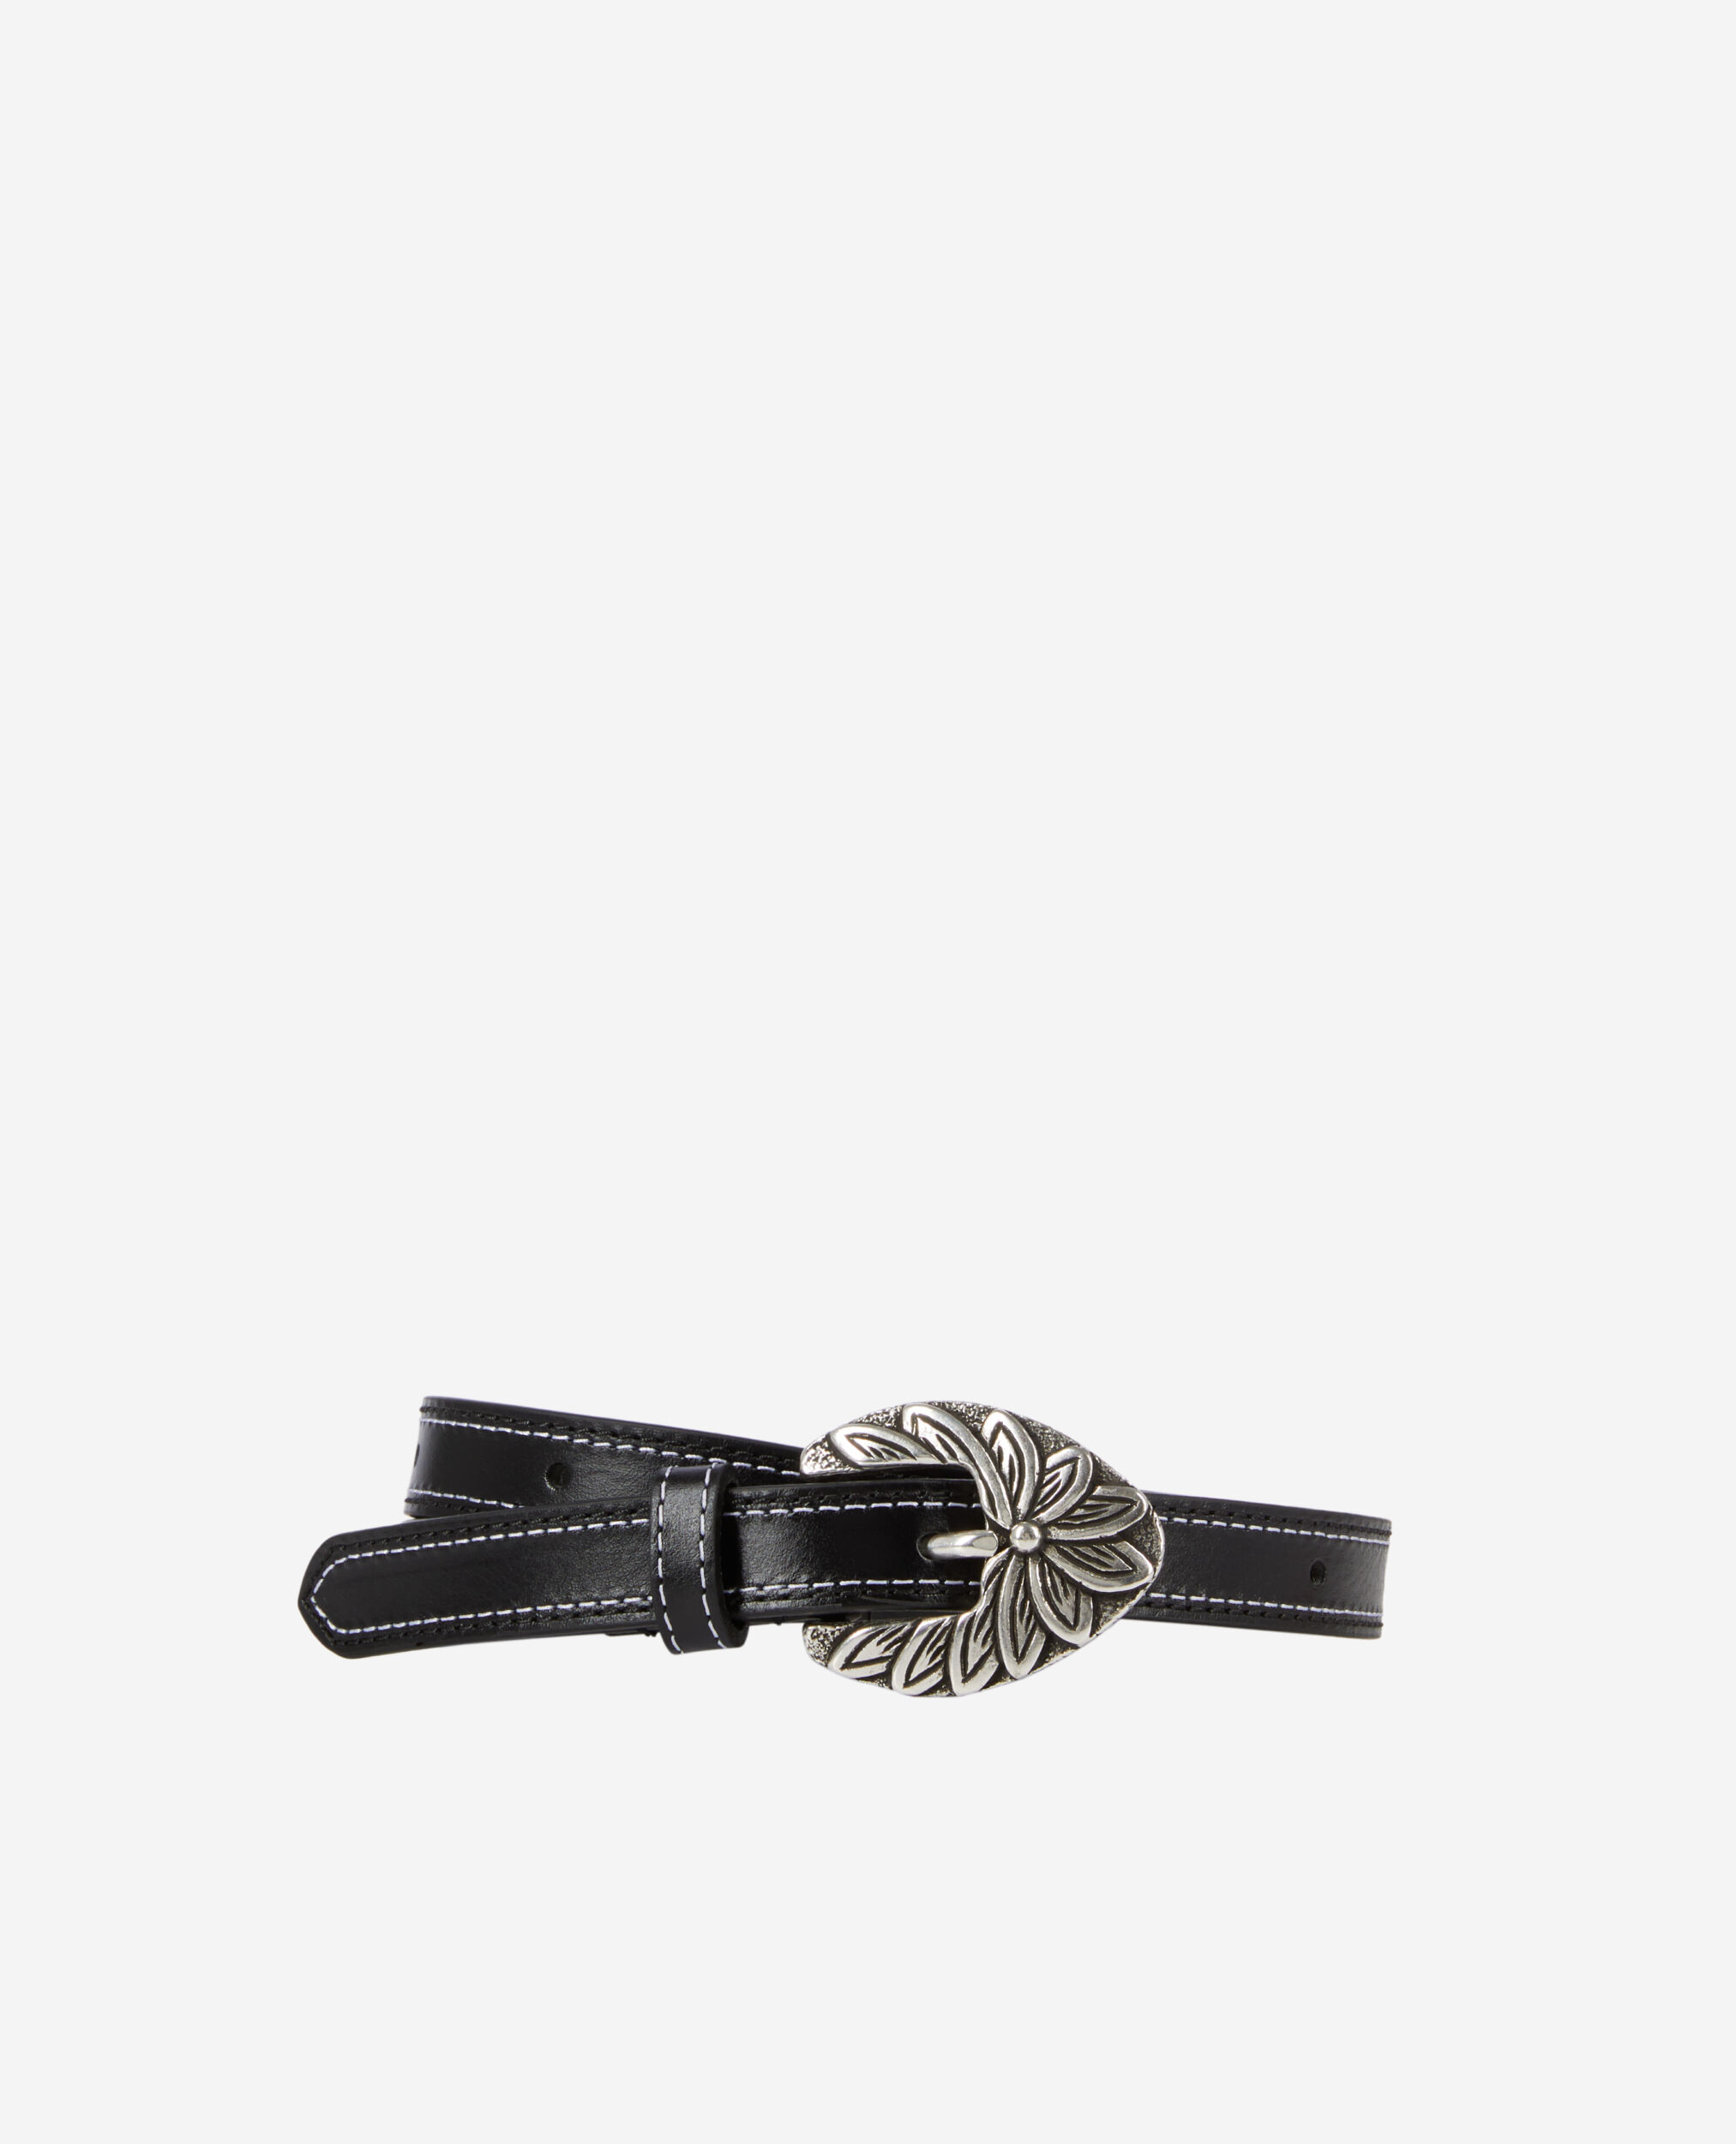 Cinturón fino piel negra hebilla grabado floral, BLACK, hi-res image number null